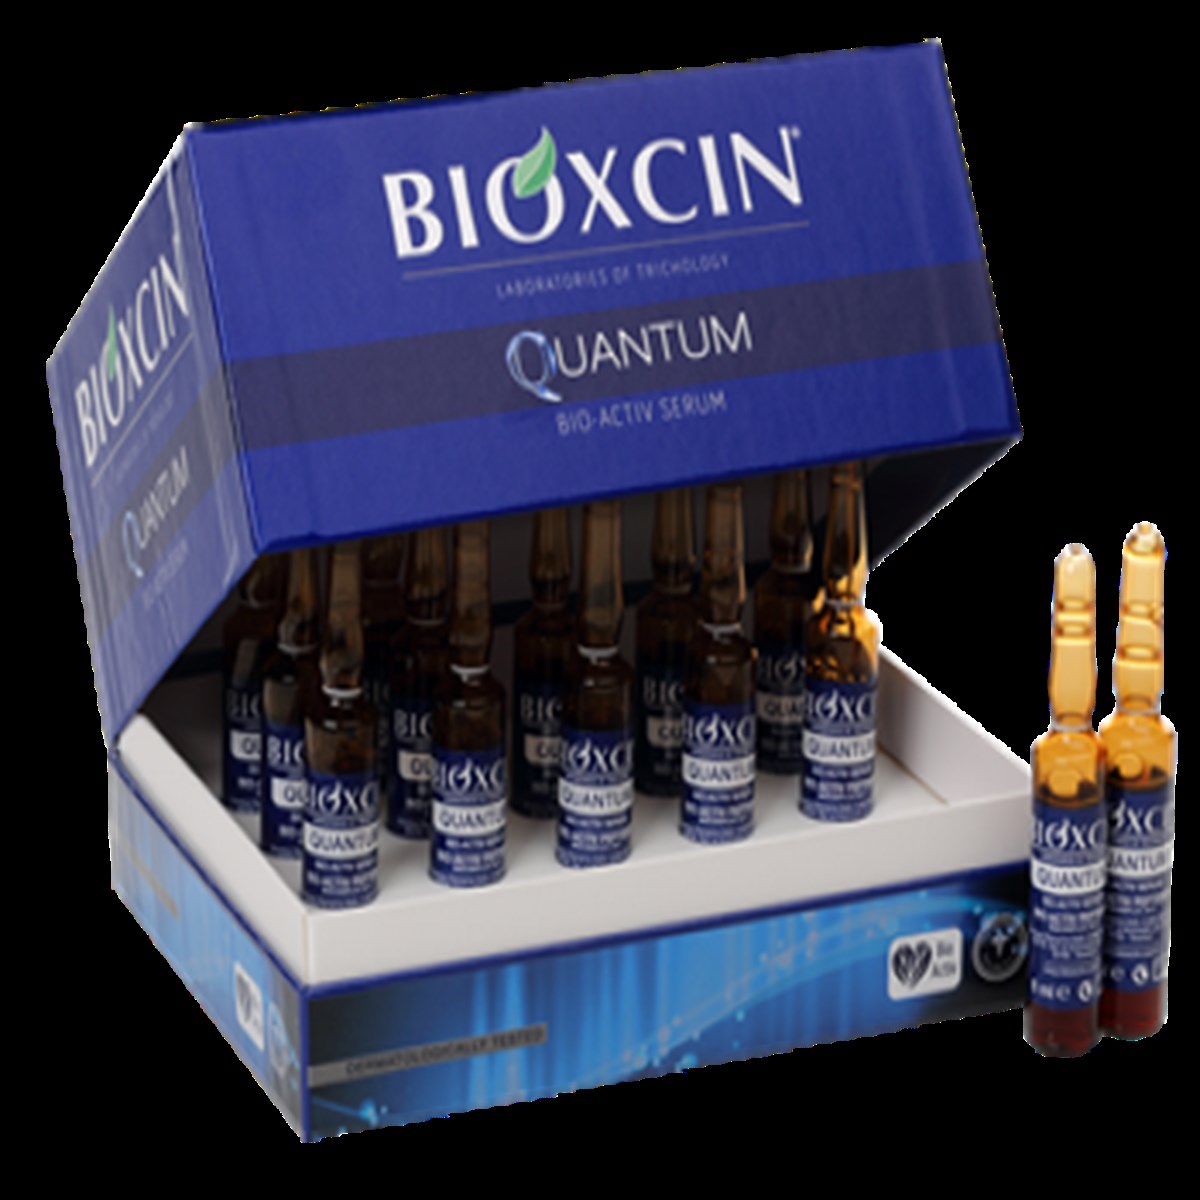 Bioxcin Quantum Bio Activ Serum 15x6ml Fiyatları | Dermosiparis.com